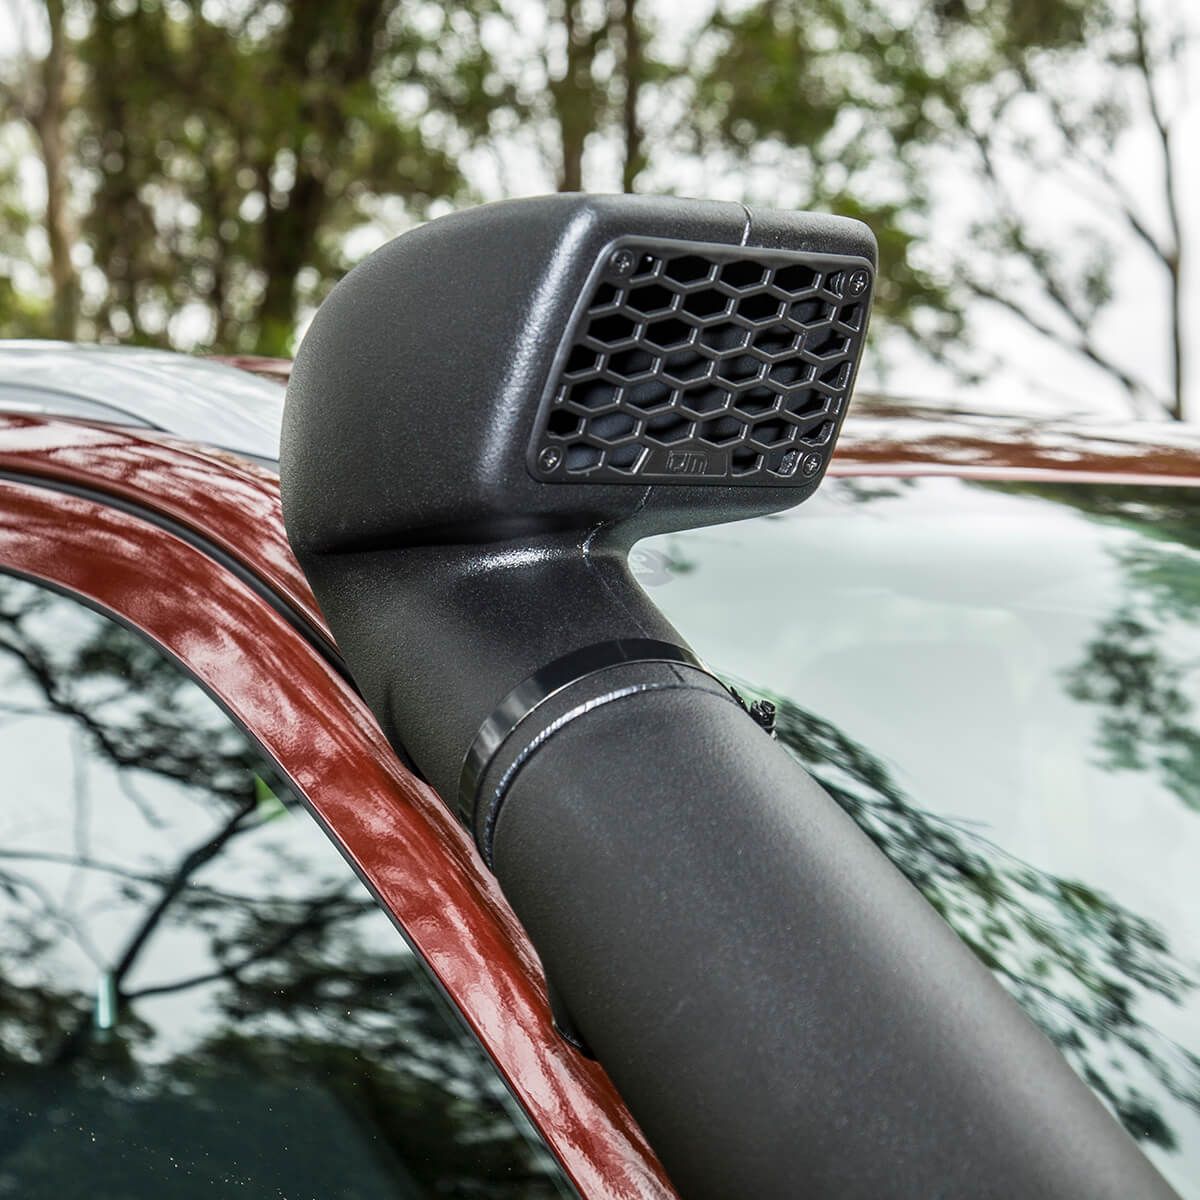 Bộ ống thở TJM Airtec Polyethylene dành cho Ford Everest 2015+  và Ford Ranger PX3 06/18+